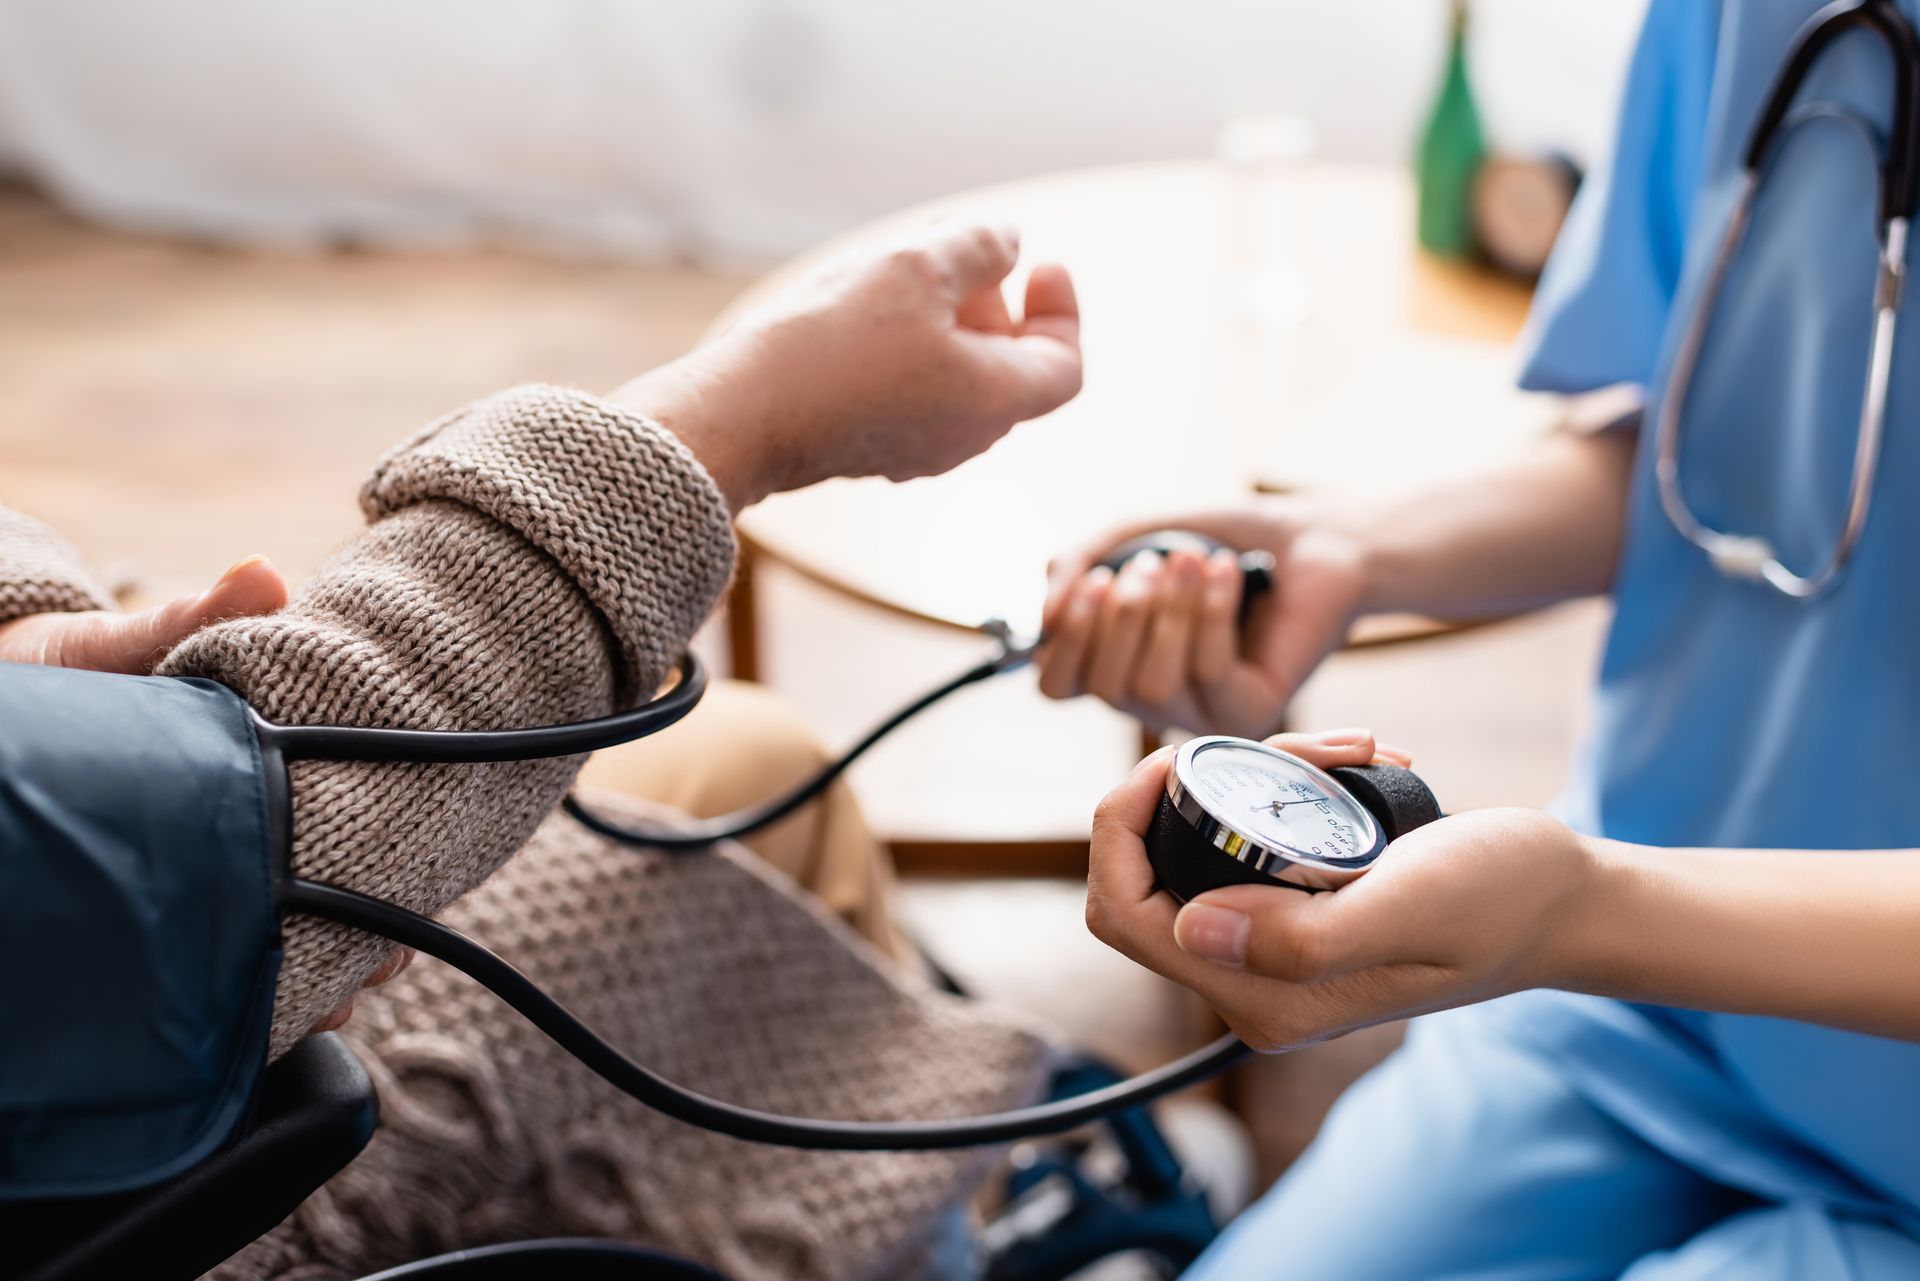 Eine Krankenschwester misst den Blutdruck einer Person